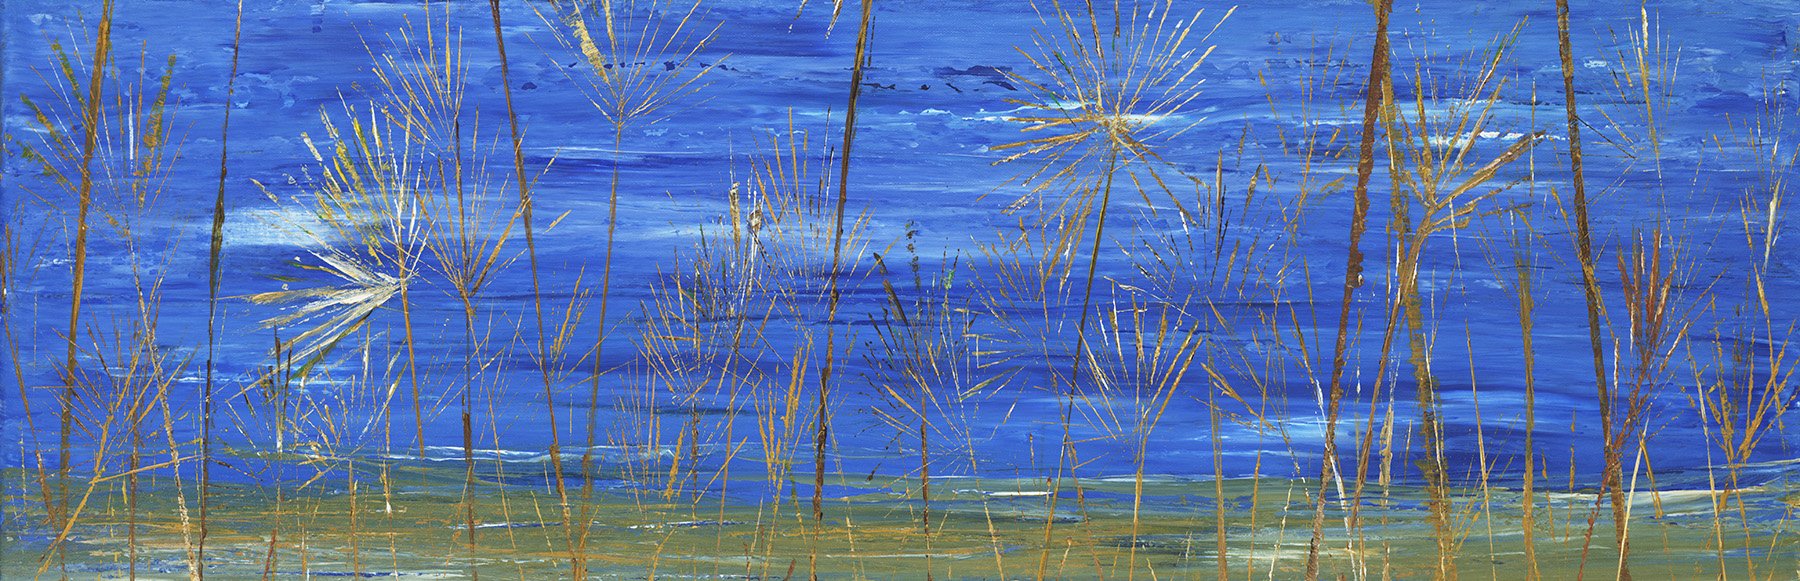 68 Beach Grass 3.jpg